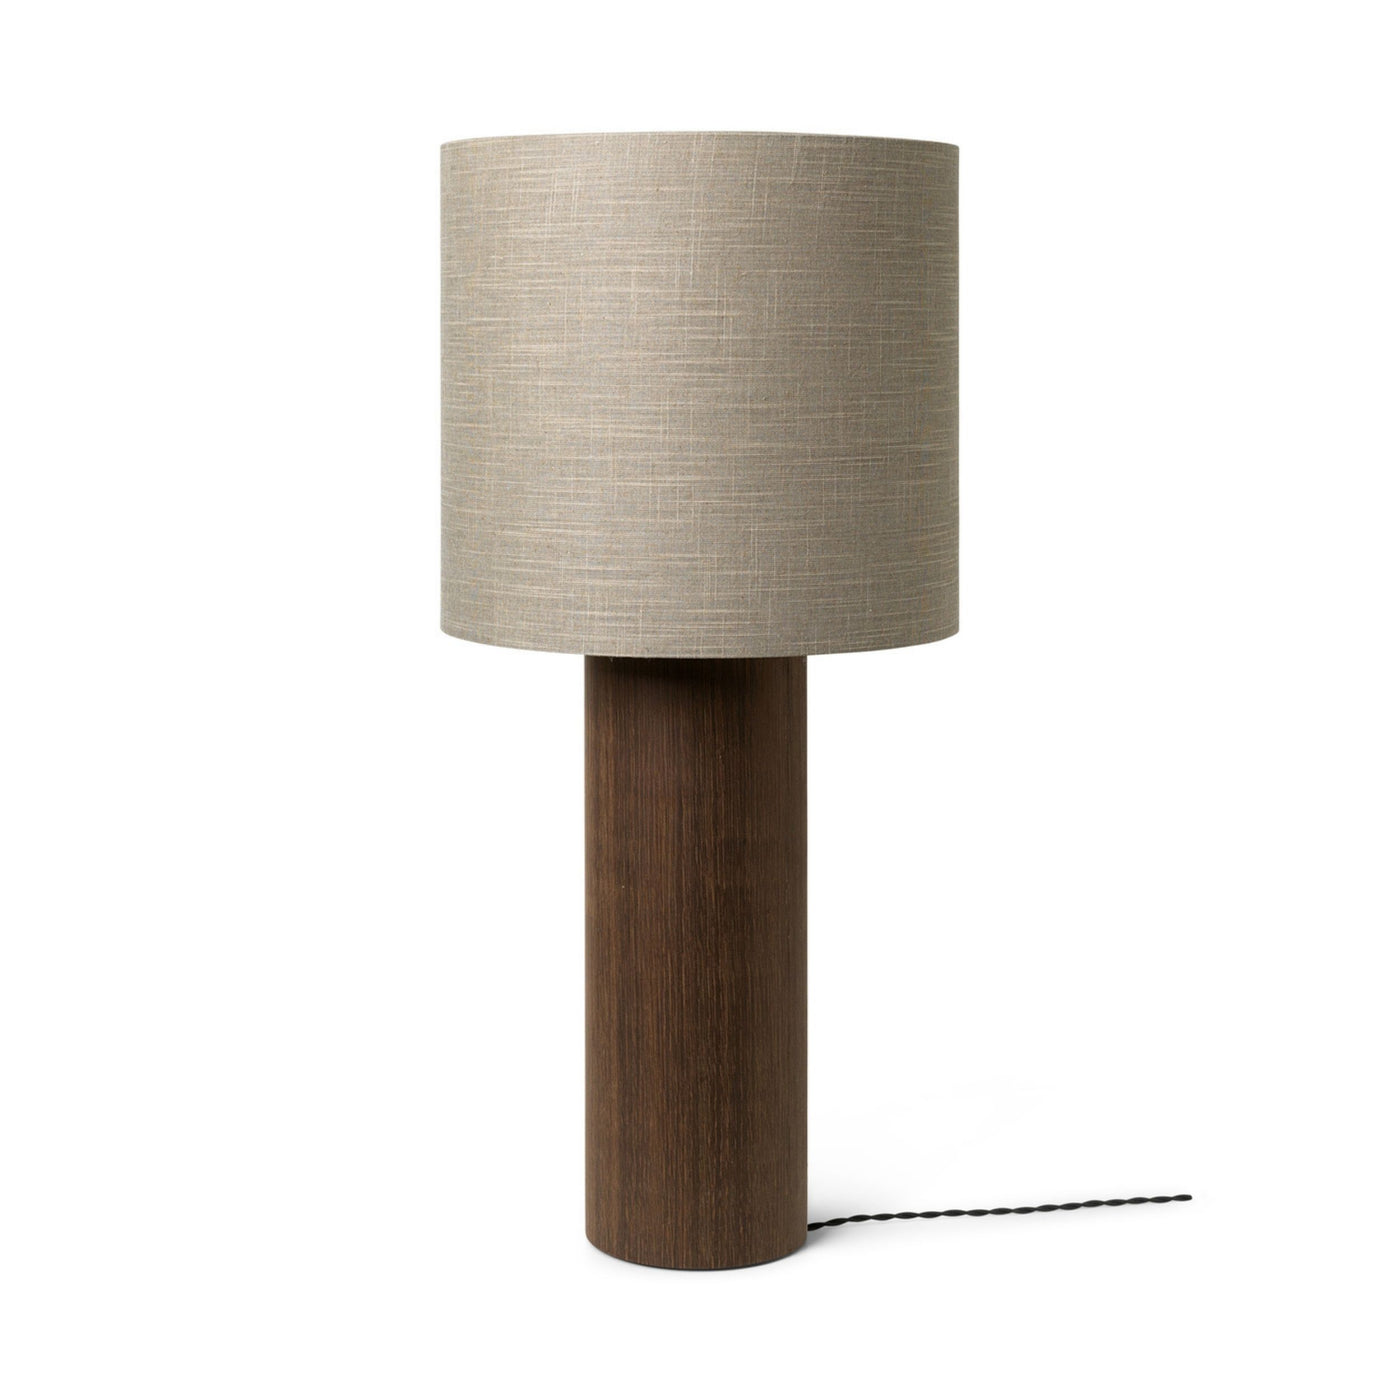 Ferm Living Post Floor Lamp Base. Shop online at someday designs. #design_solid